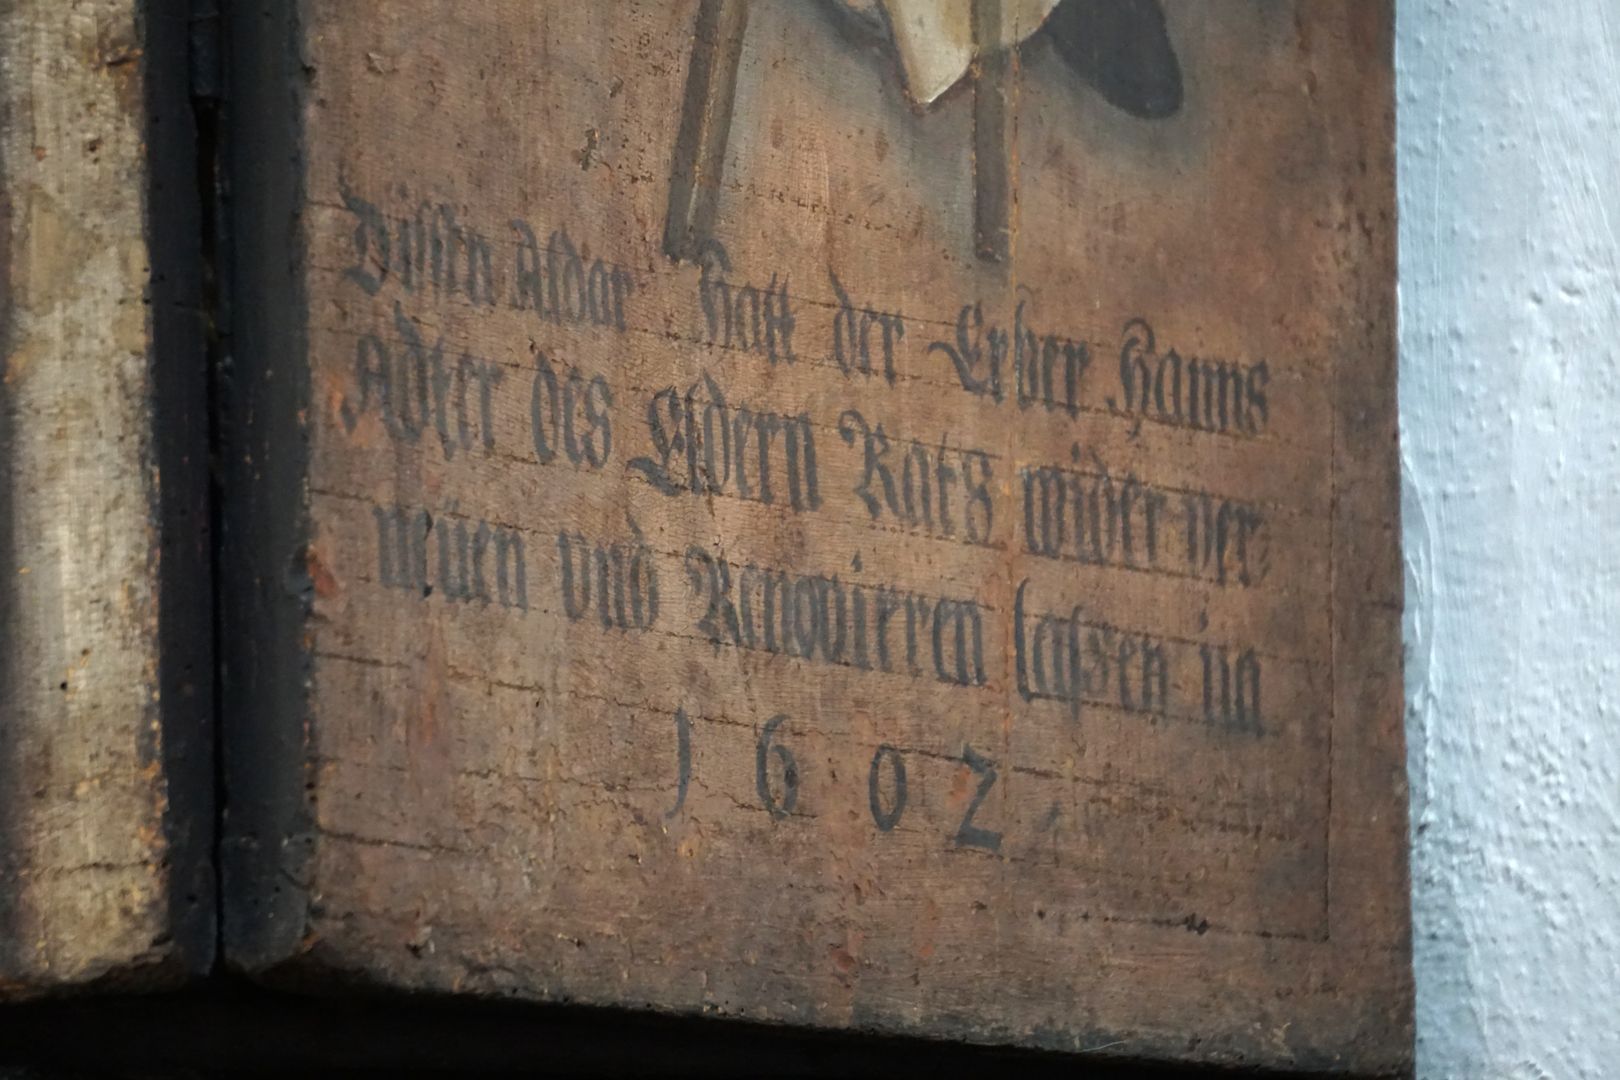 Altar der Schönen Maria Geschlossener Altar, rechte Seitentafel unten: Inschrift zur Renovierung von 1602 auf Veranlassung des „Erber Hanns Adter des Eldern Rats“